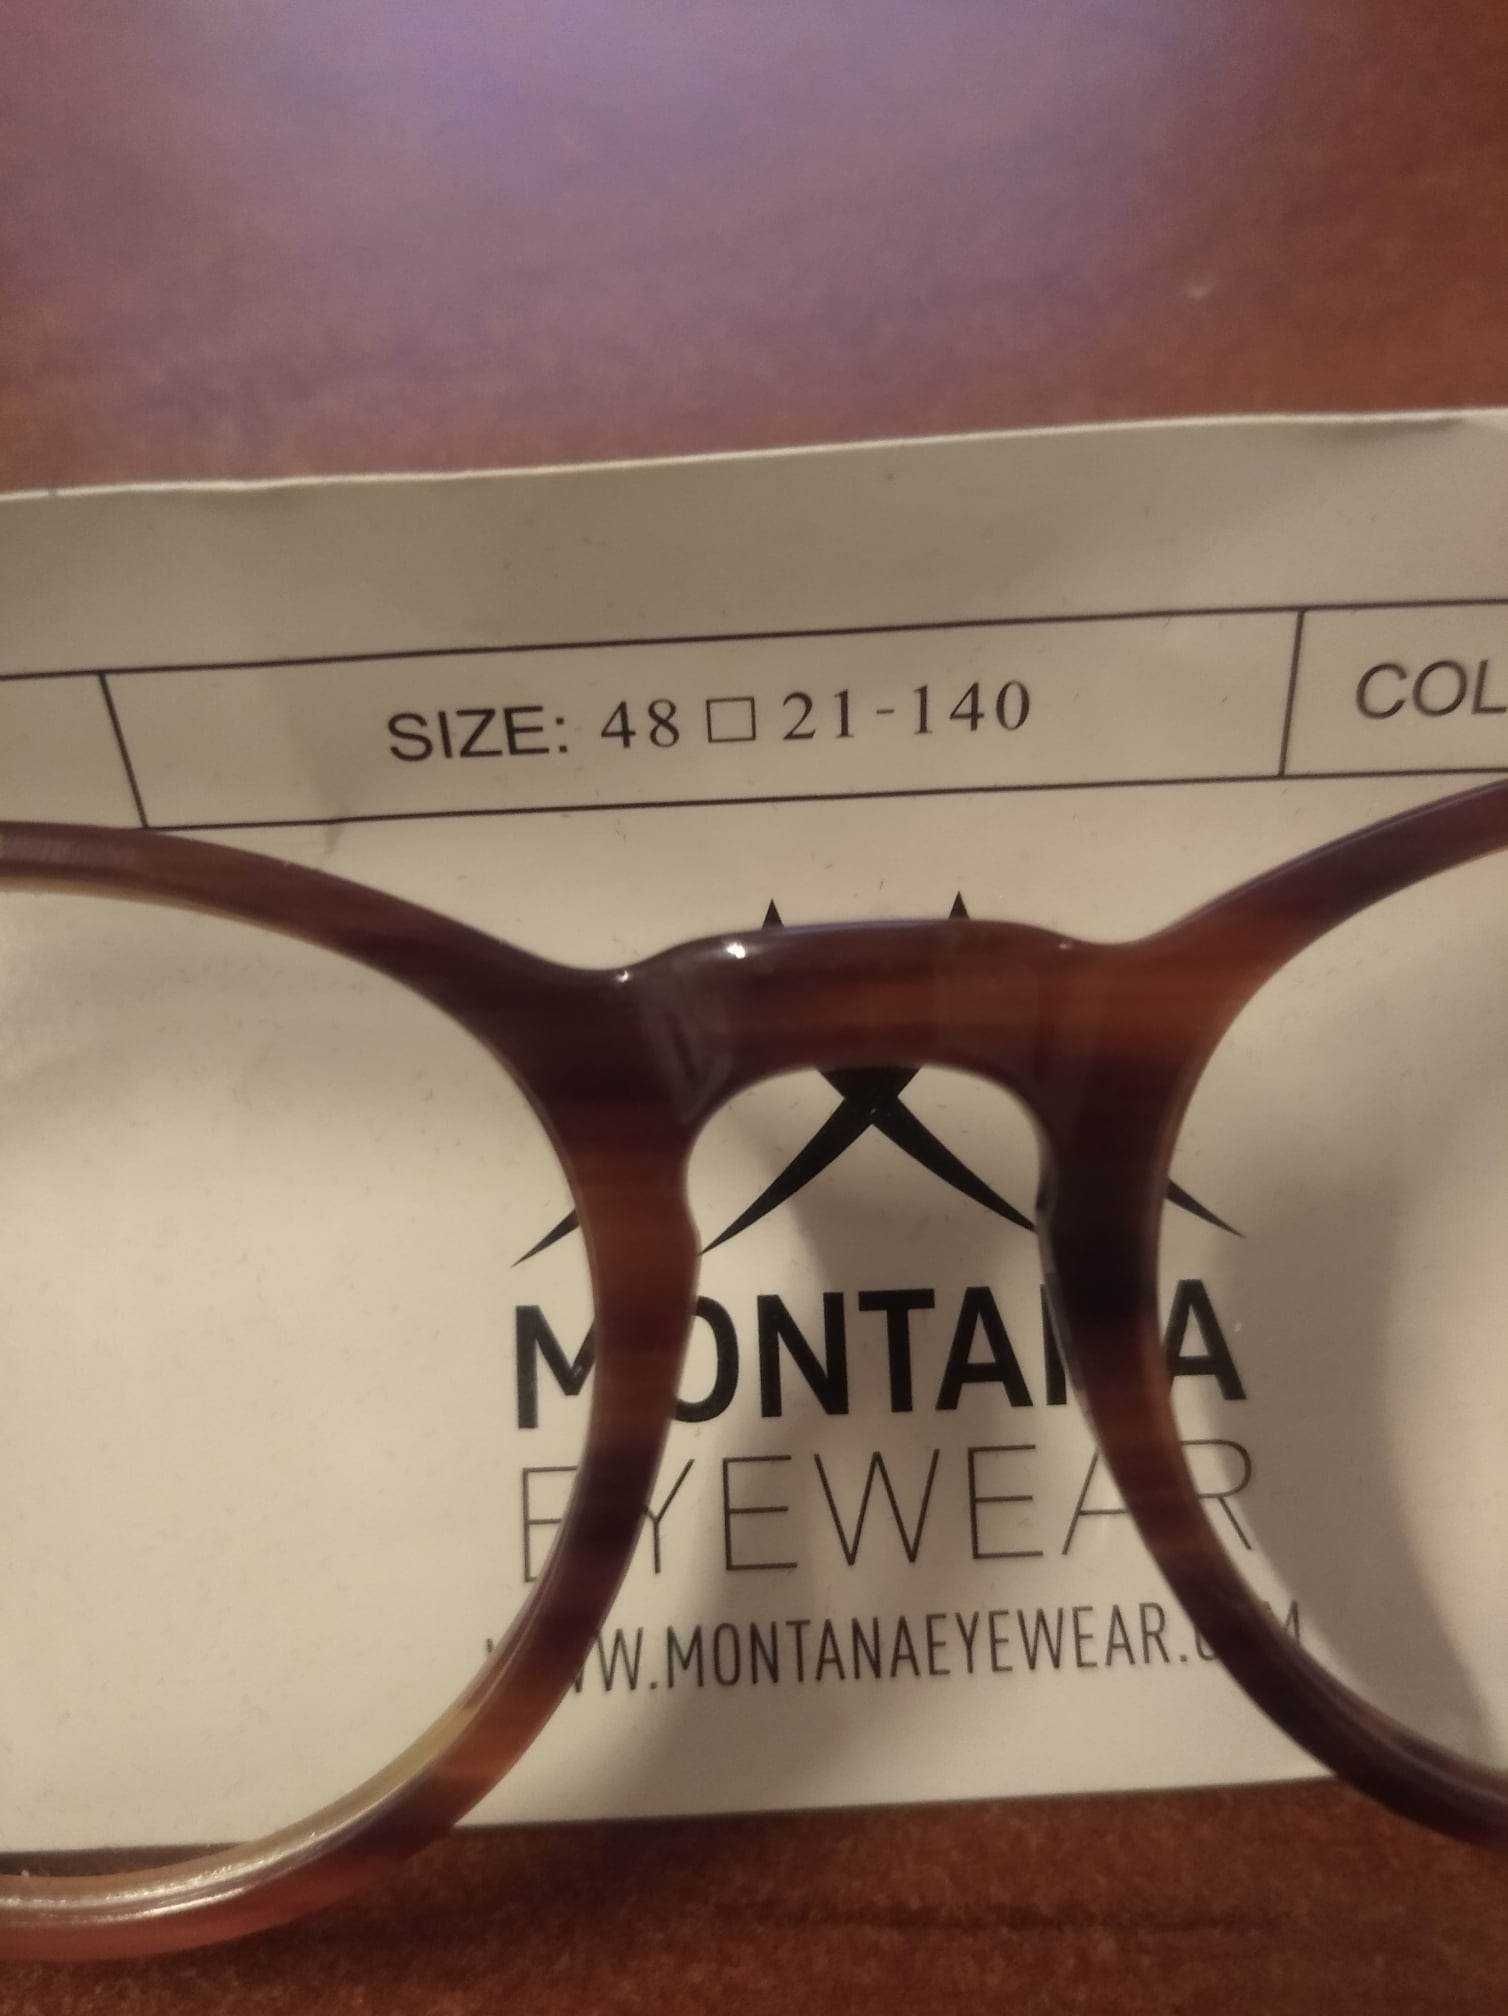 Rame de ochelari Montana (Elvetia)